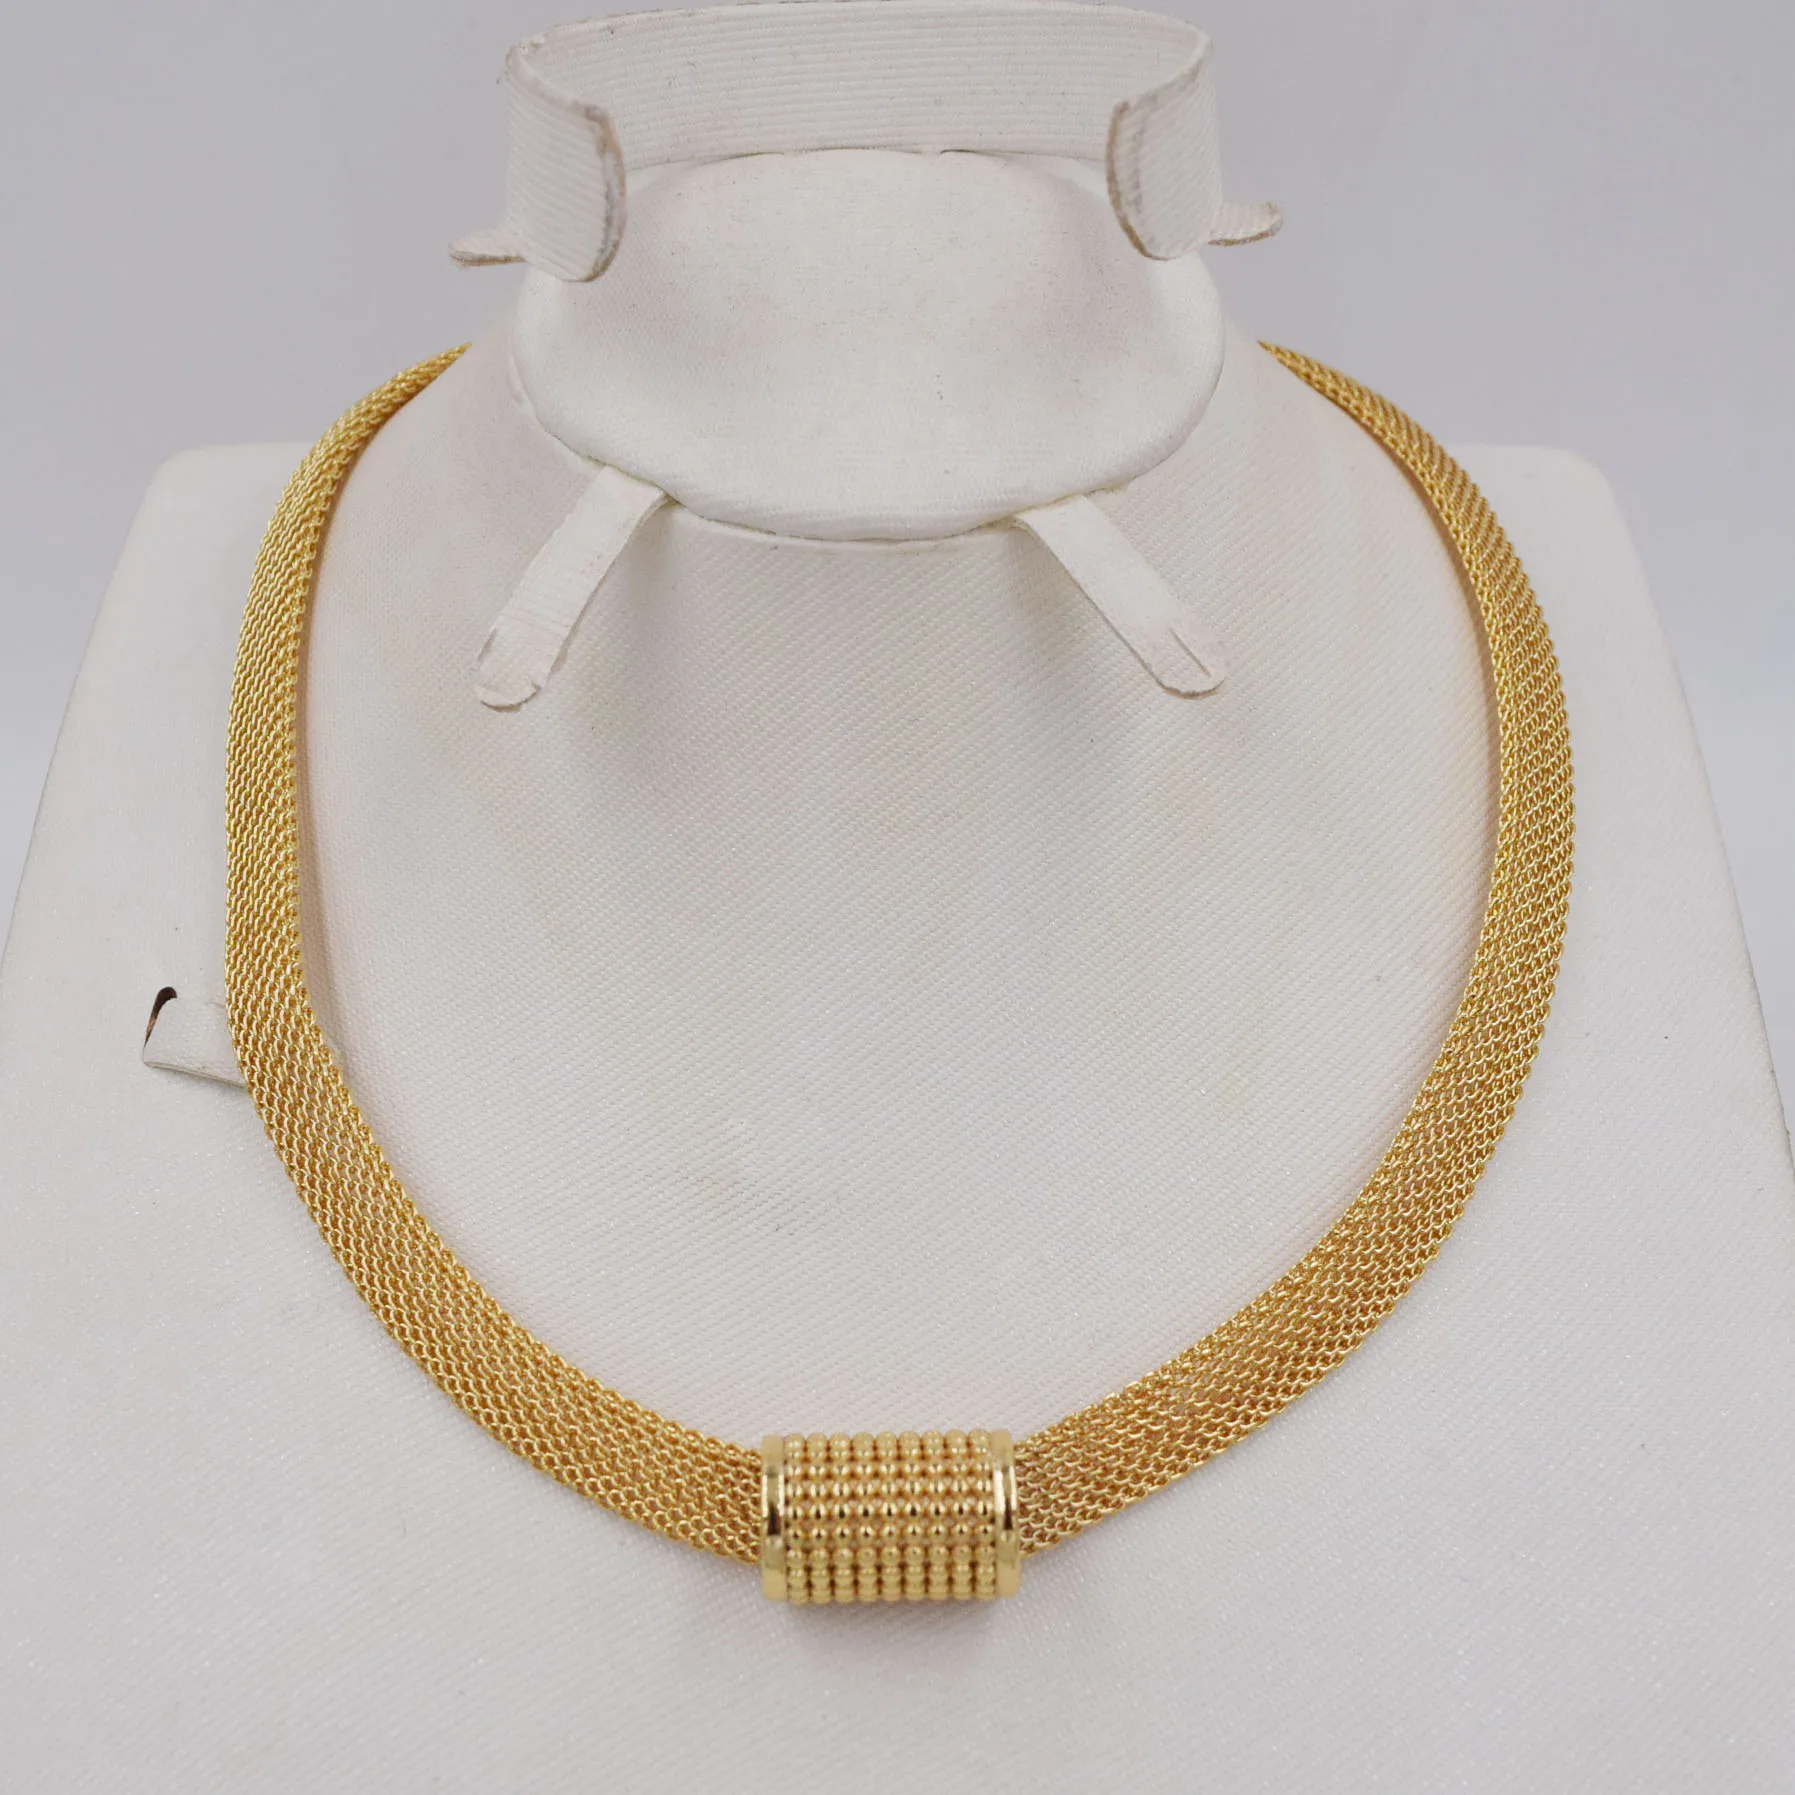 Высокое качество Ltaly 750 золотой цвет набор украшений для женщин африканские бусы ювелирные изделия ожерелье набор серьги ювелирные изделия